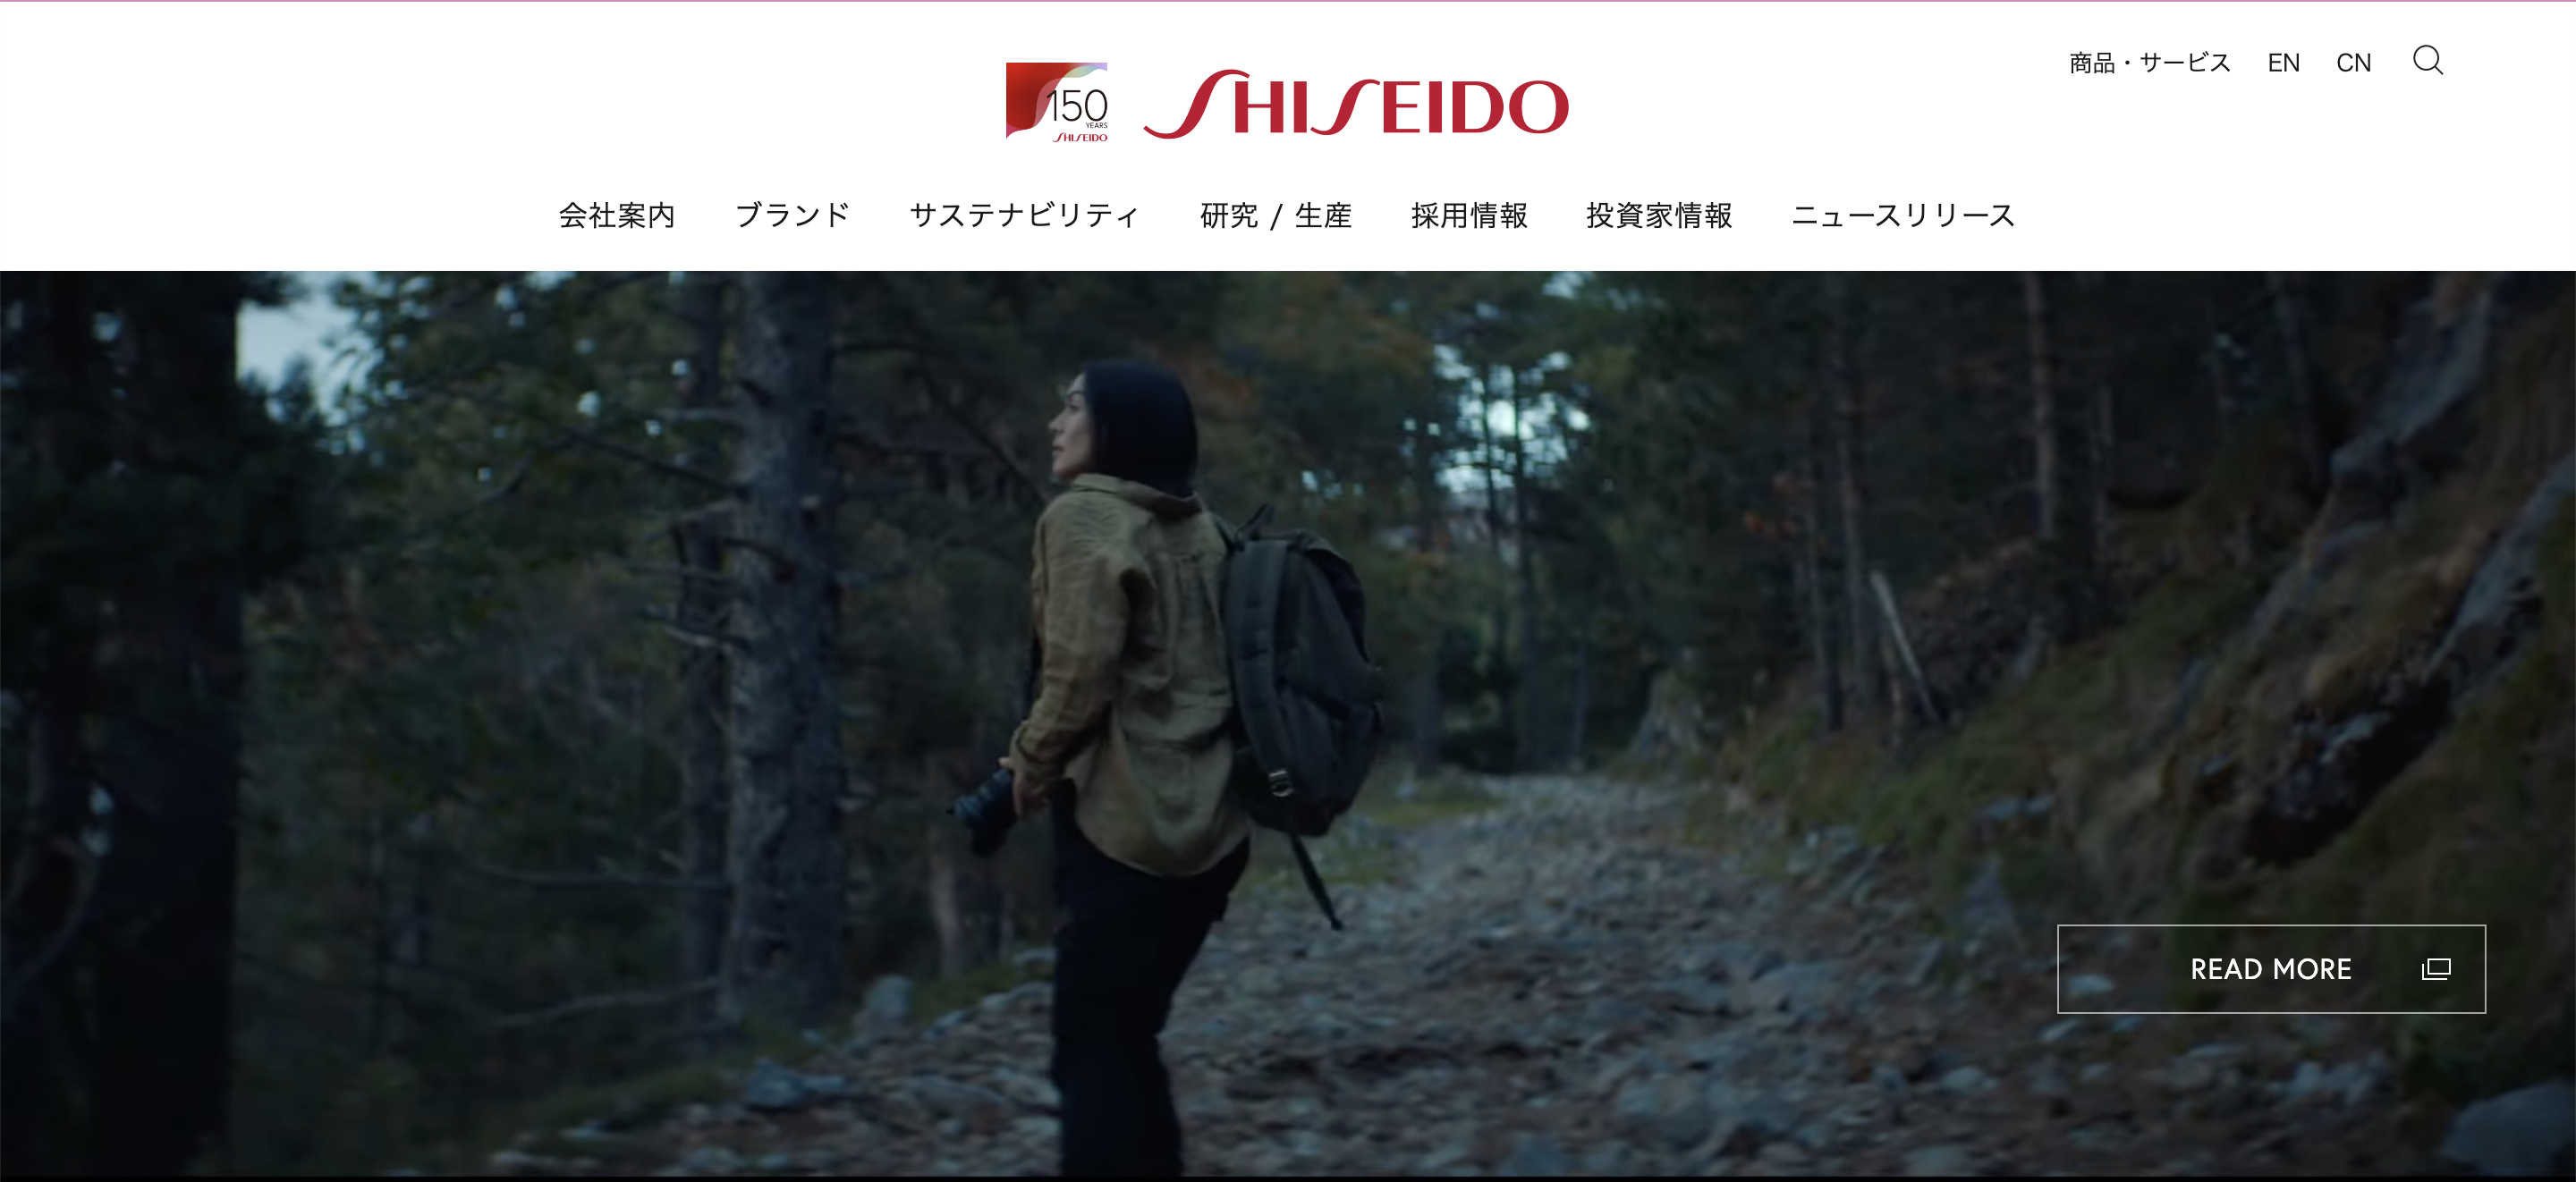 SHISEIDO サイトイメージ